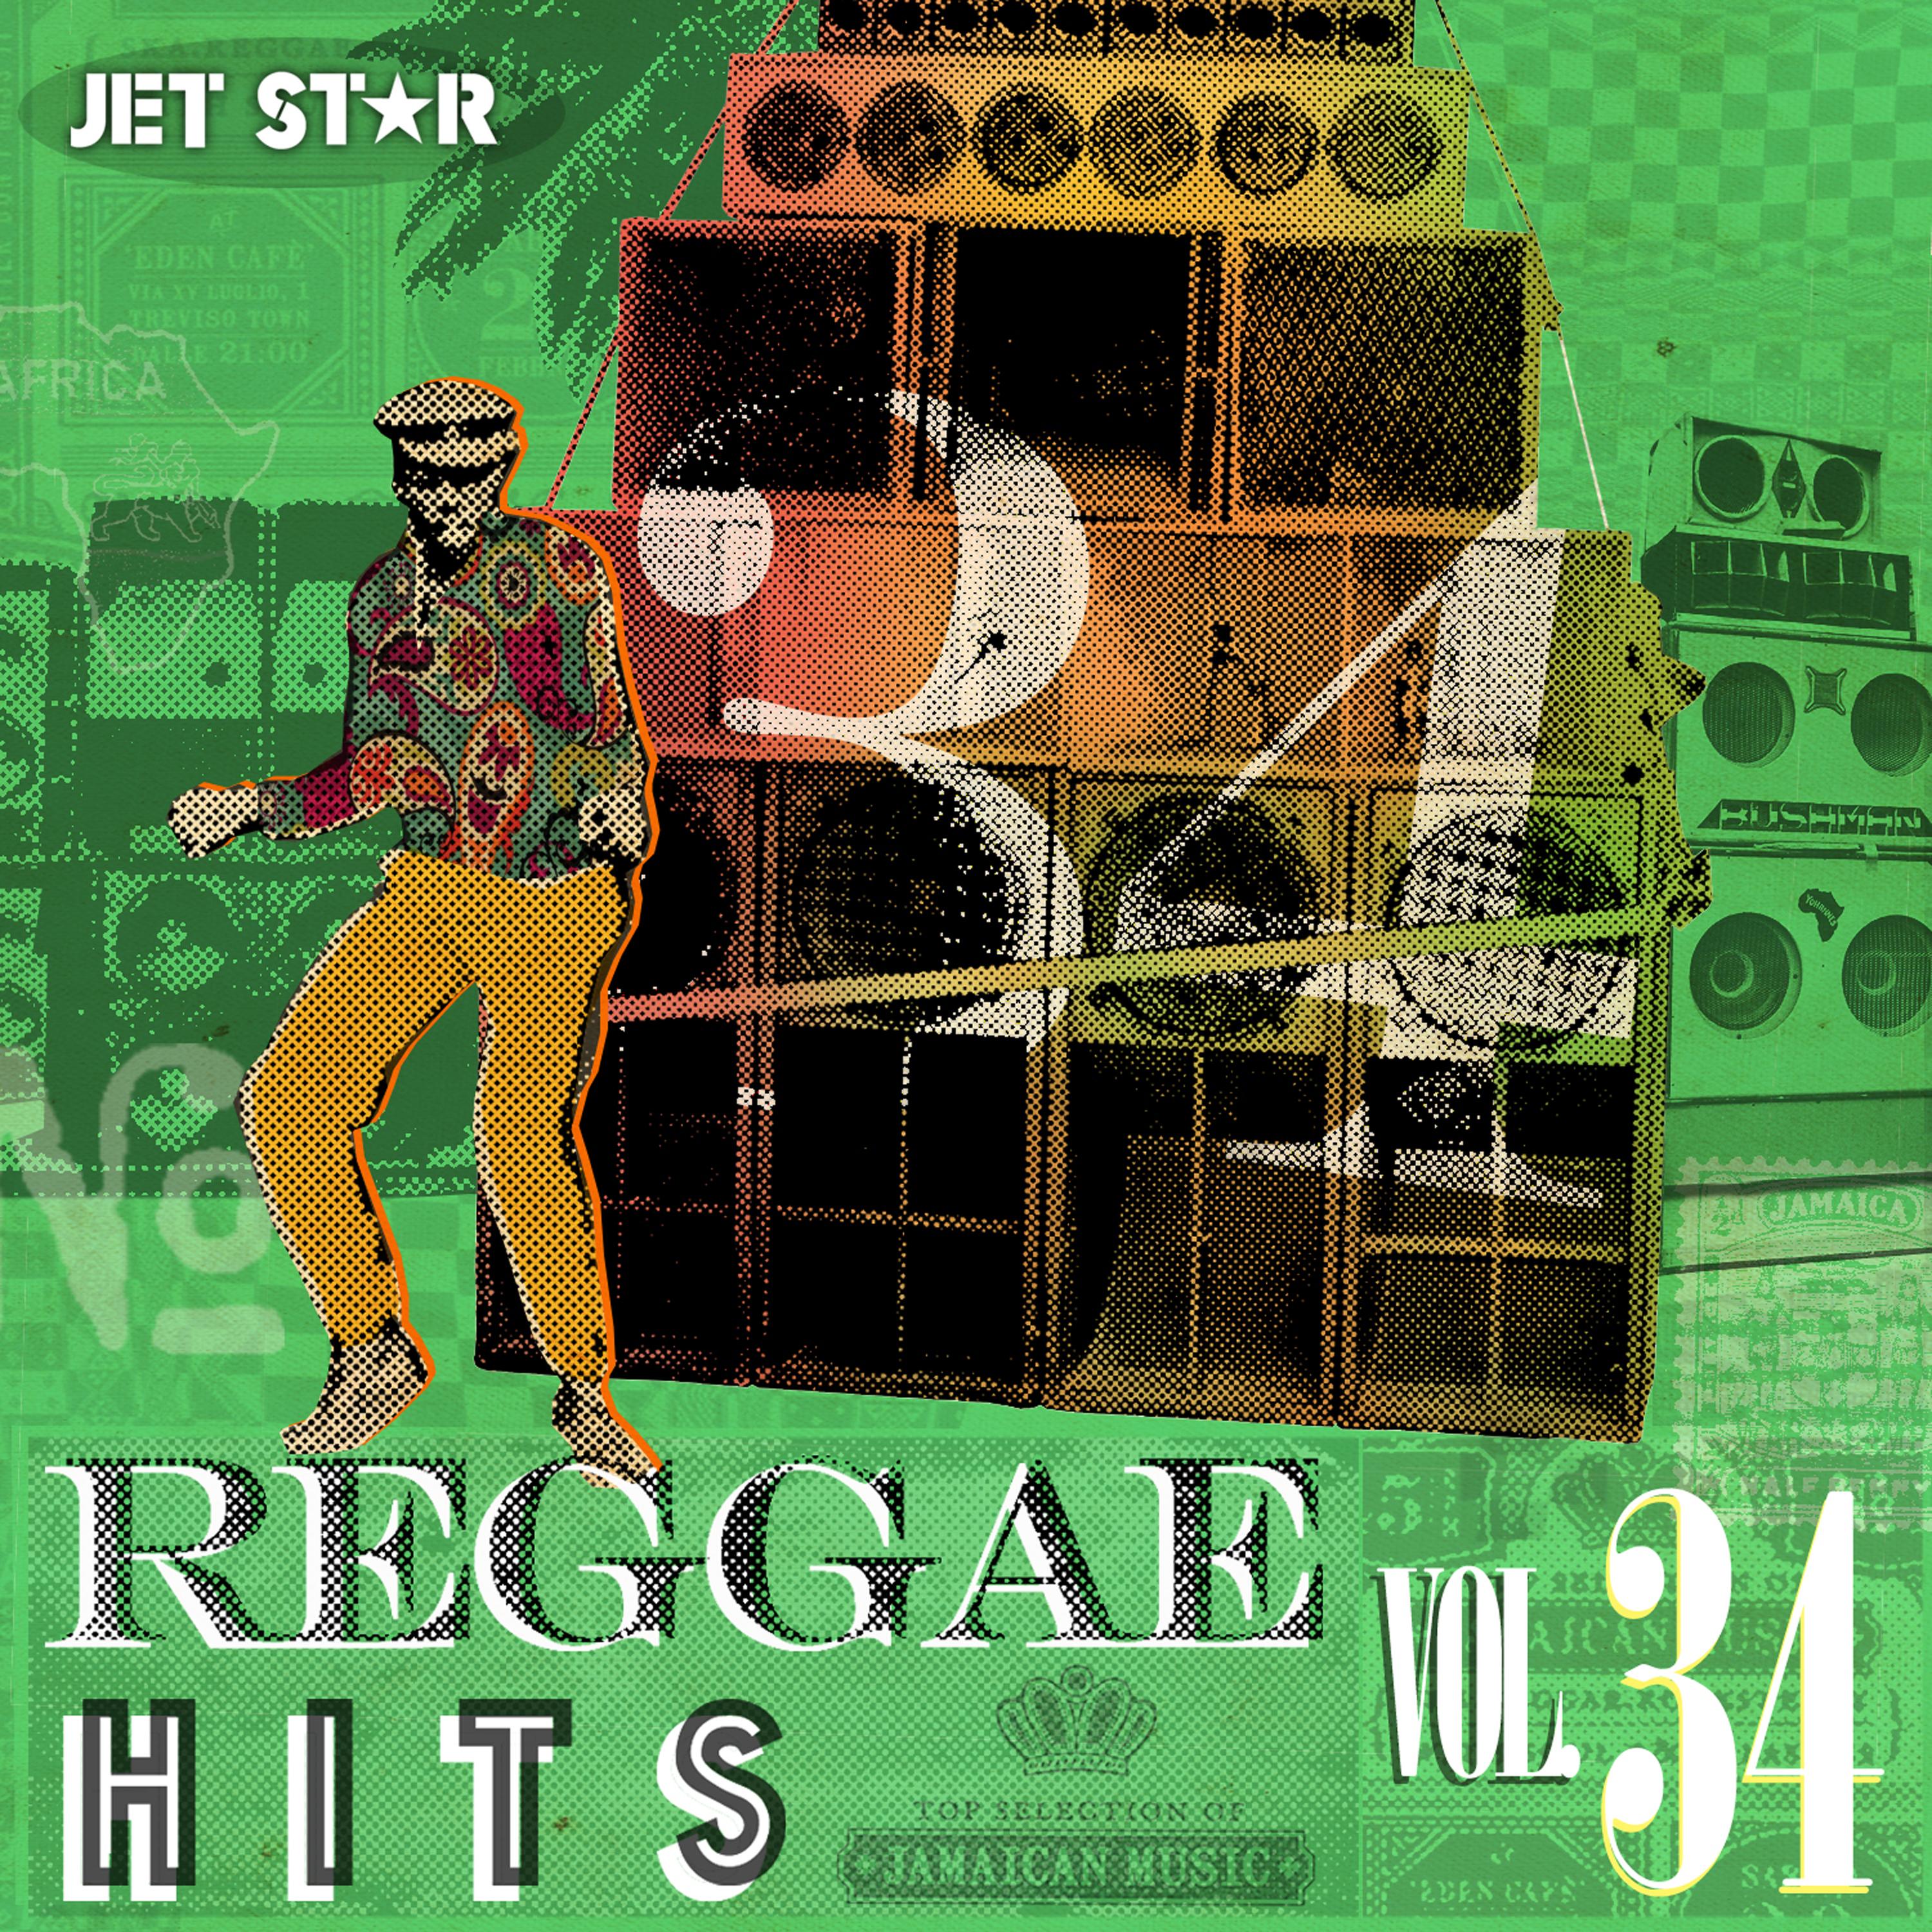 Reggae Hits, Vol. 34